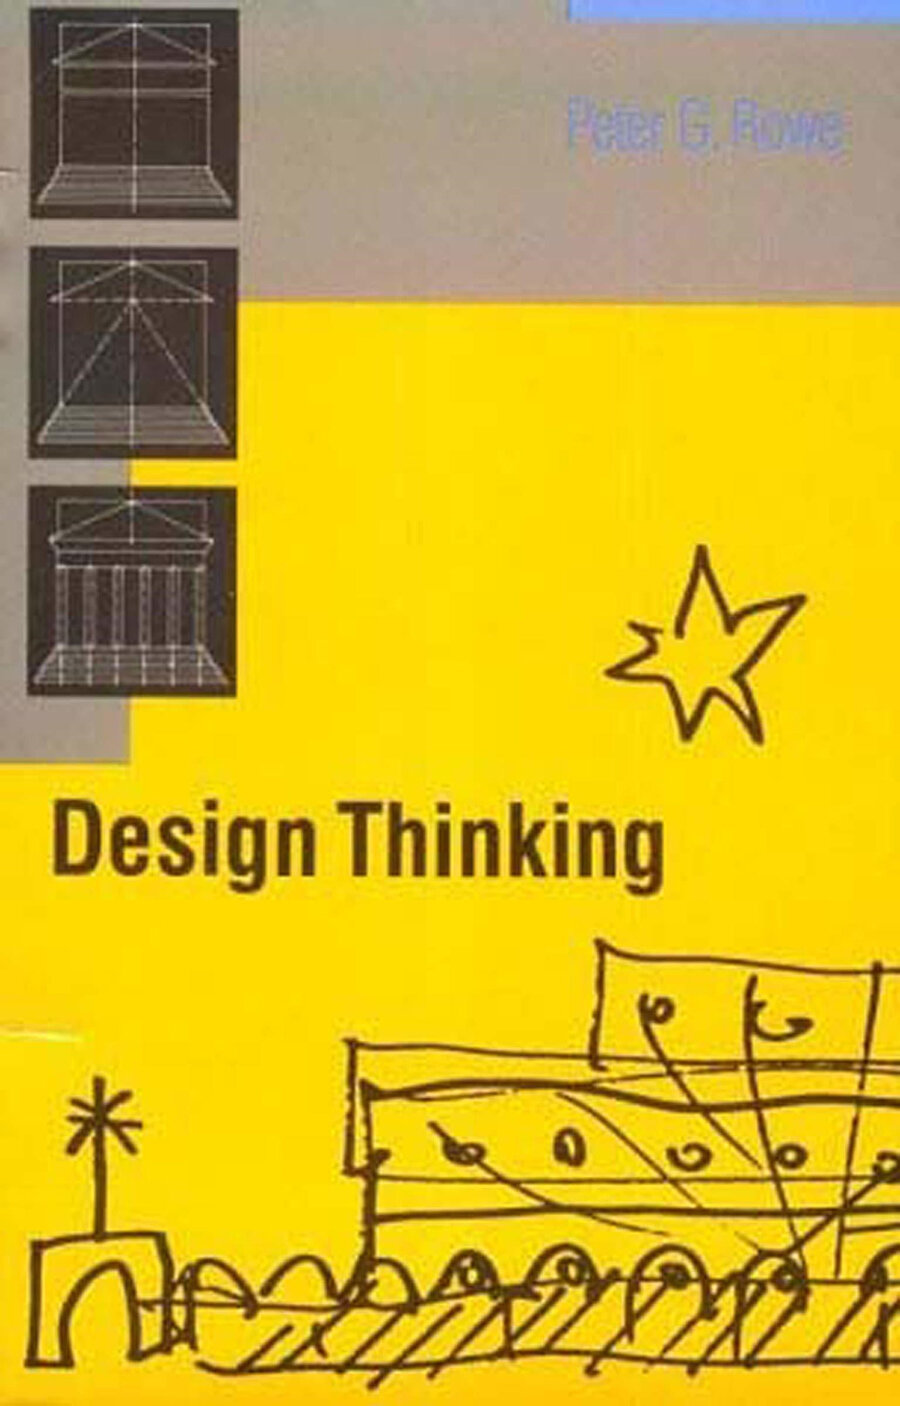 Peter Rowe’un Tasarım Odaklı Düşünme (Design Thinking) kitabı. 